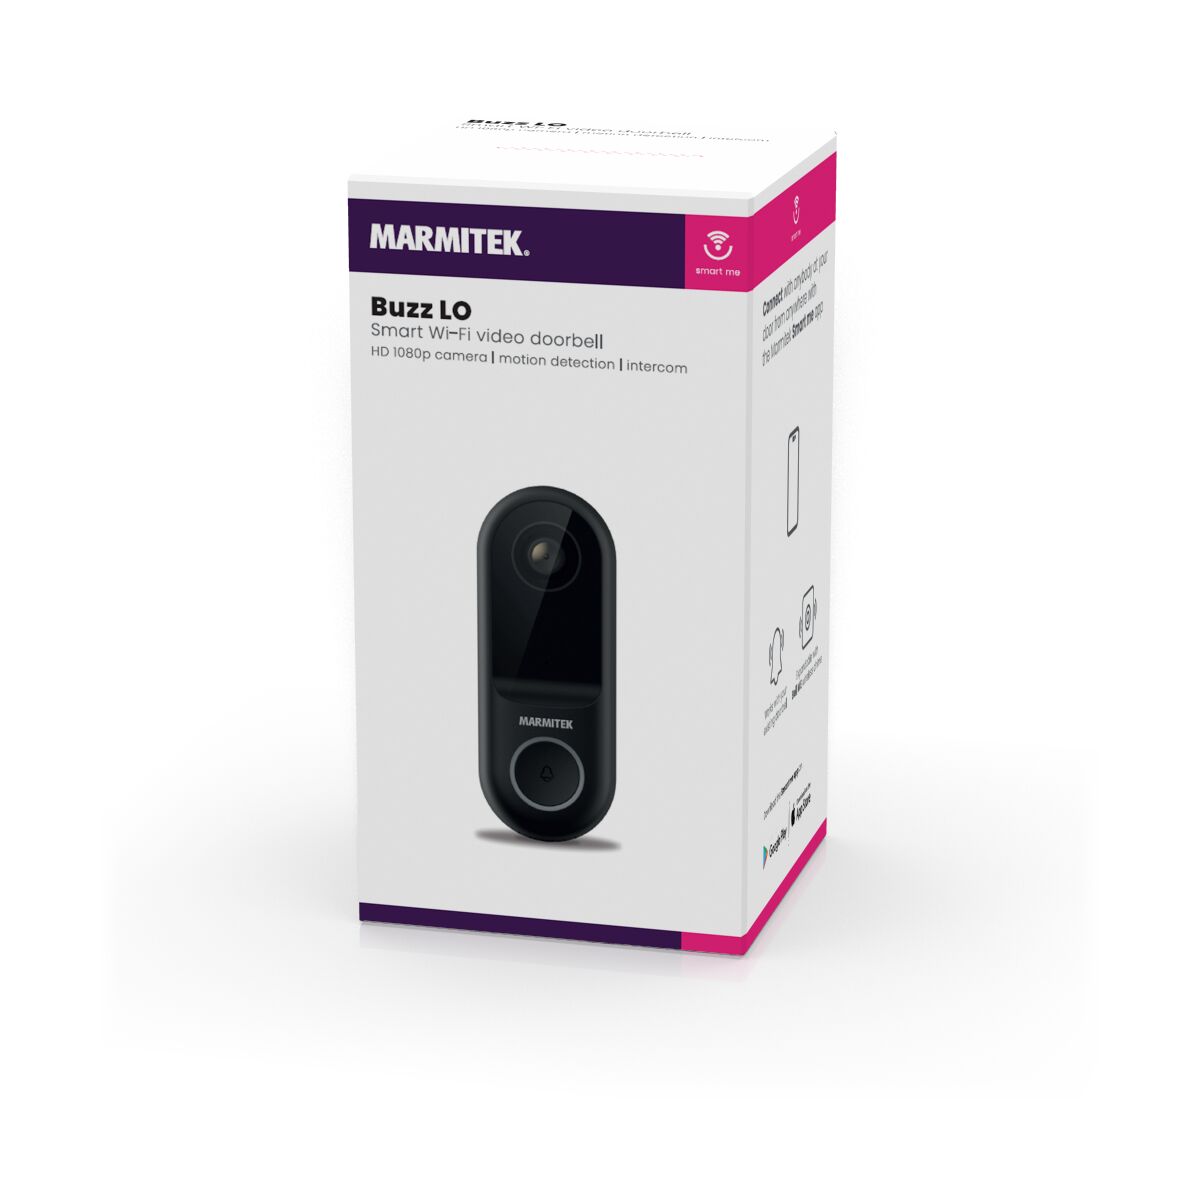 Buzz LO - Doorbell camera - 3D Packshot Image | Marmitek